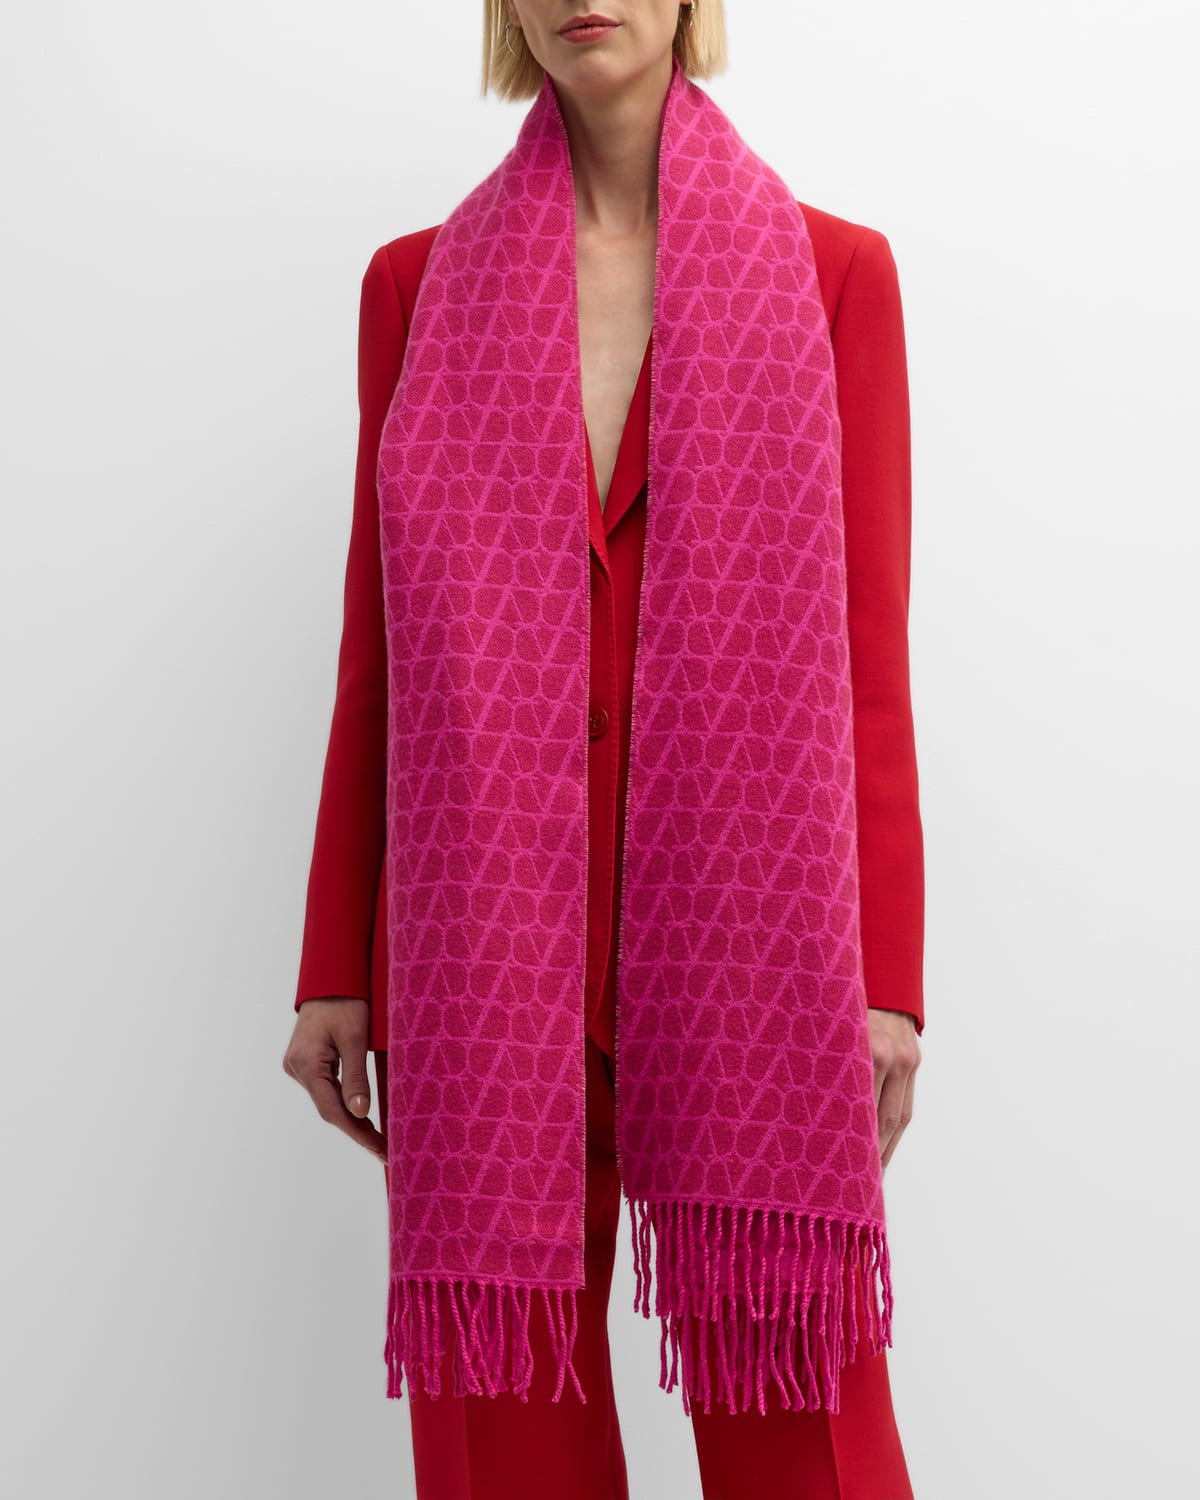 Valentino Garavani Toile Iconographe Jacquard Cashmere-blend Stole In Pink